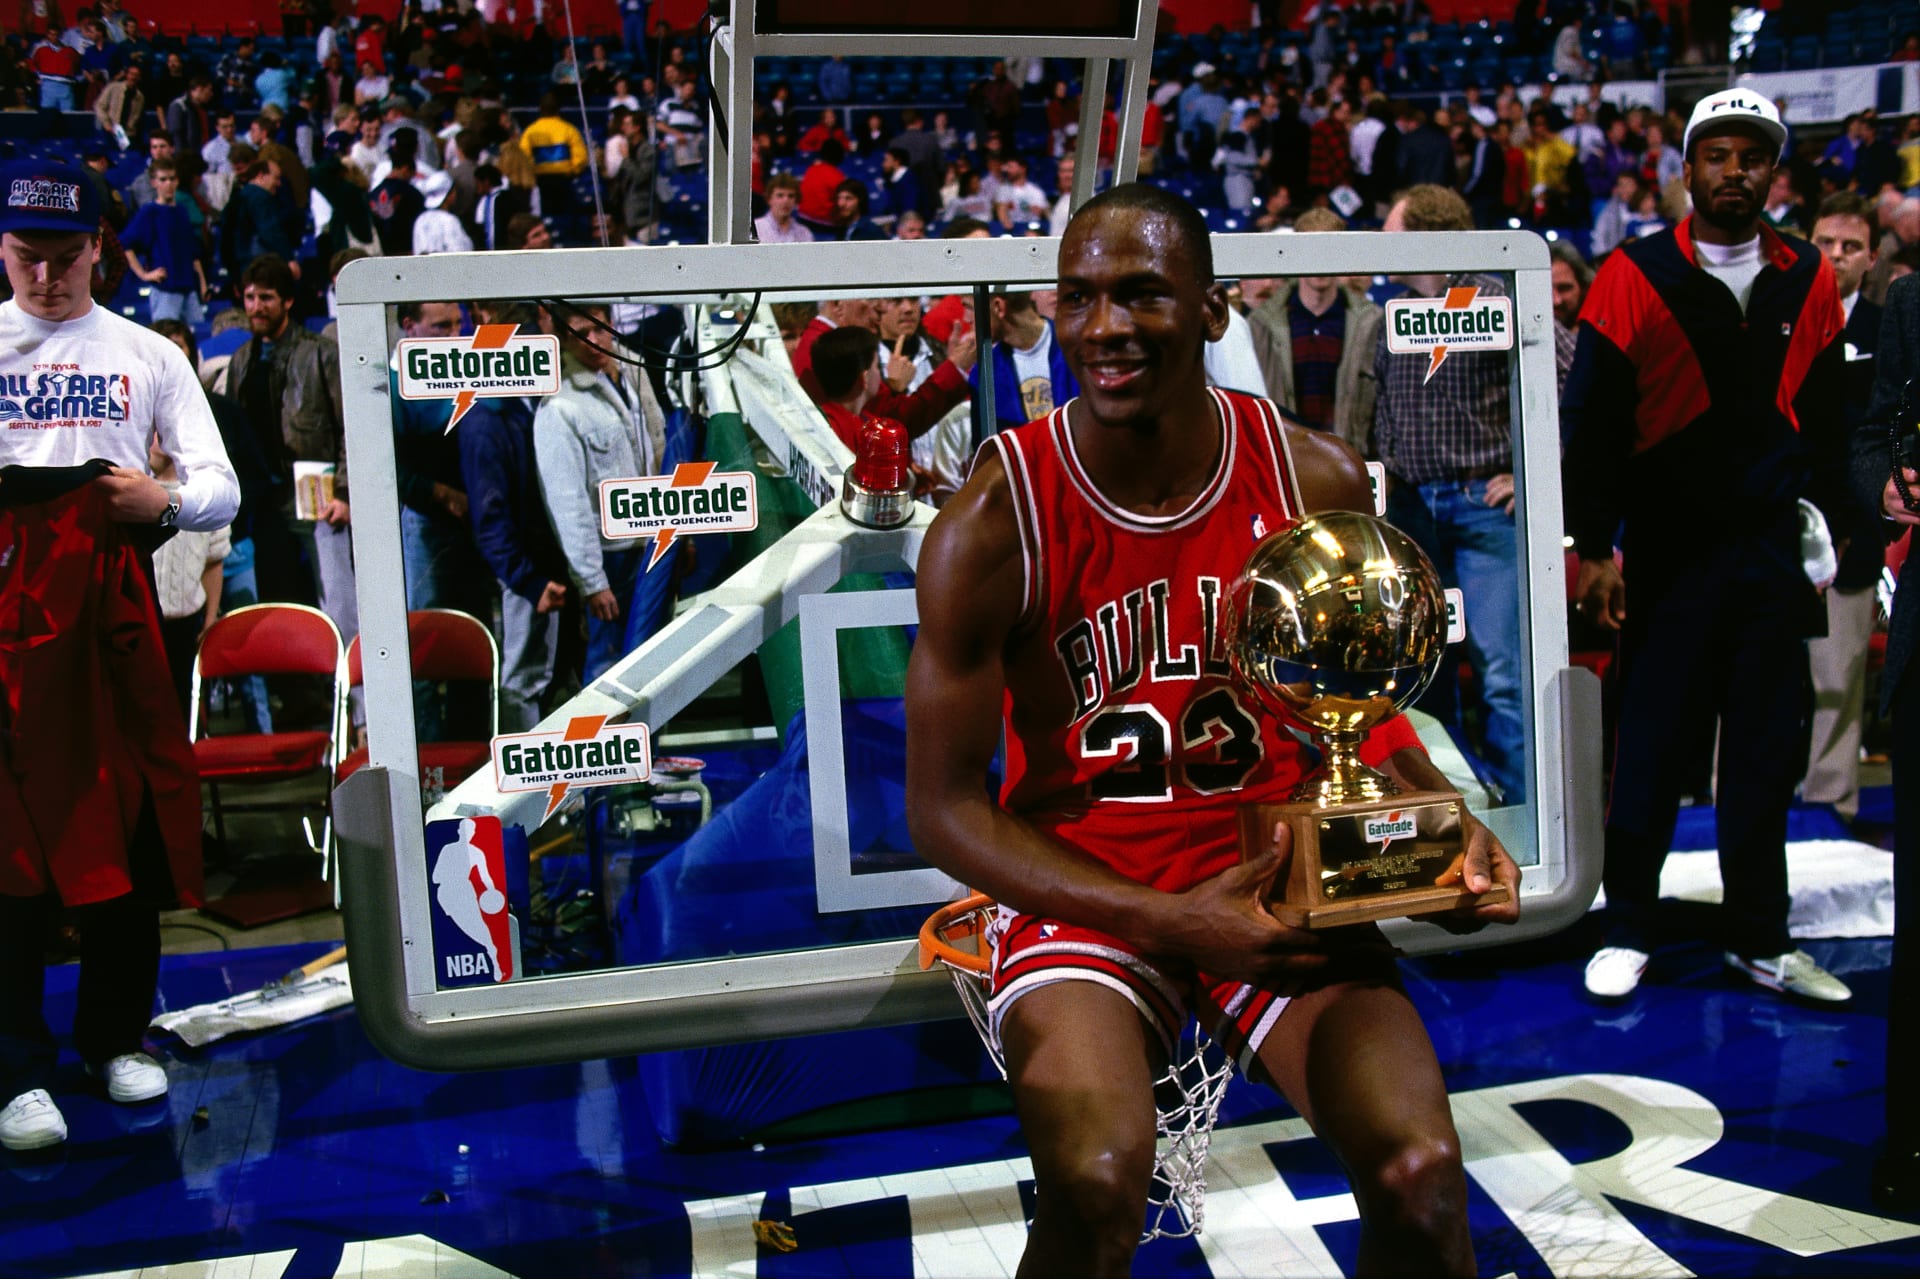 Pantano Responder cuchara Imágenes míticas de la historia del deporte: Michael Jordan y el All Star  de 1987 - Las Merinadas Deportivas de Edu